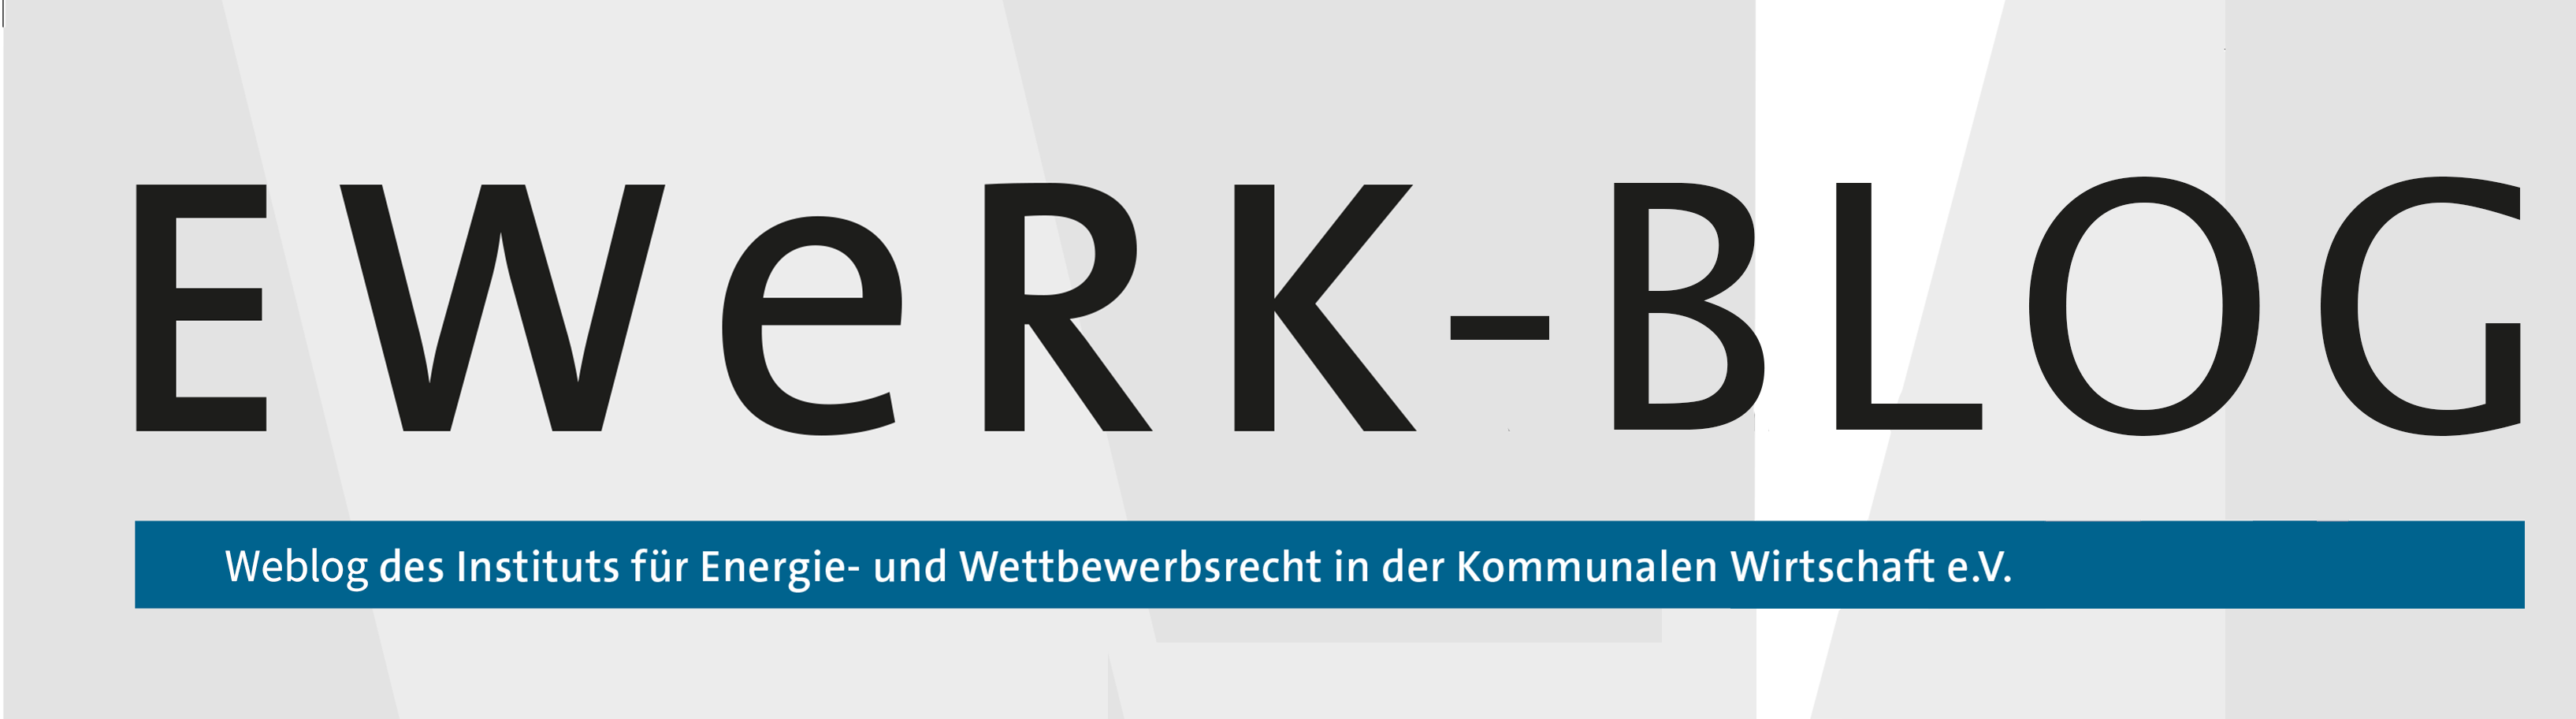 ewerk-logo-2-1.png